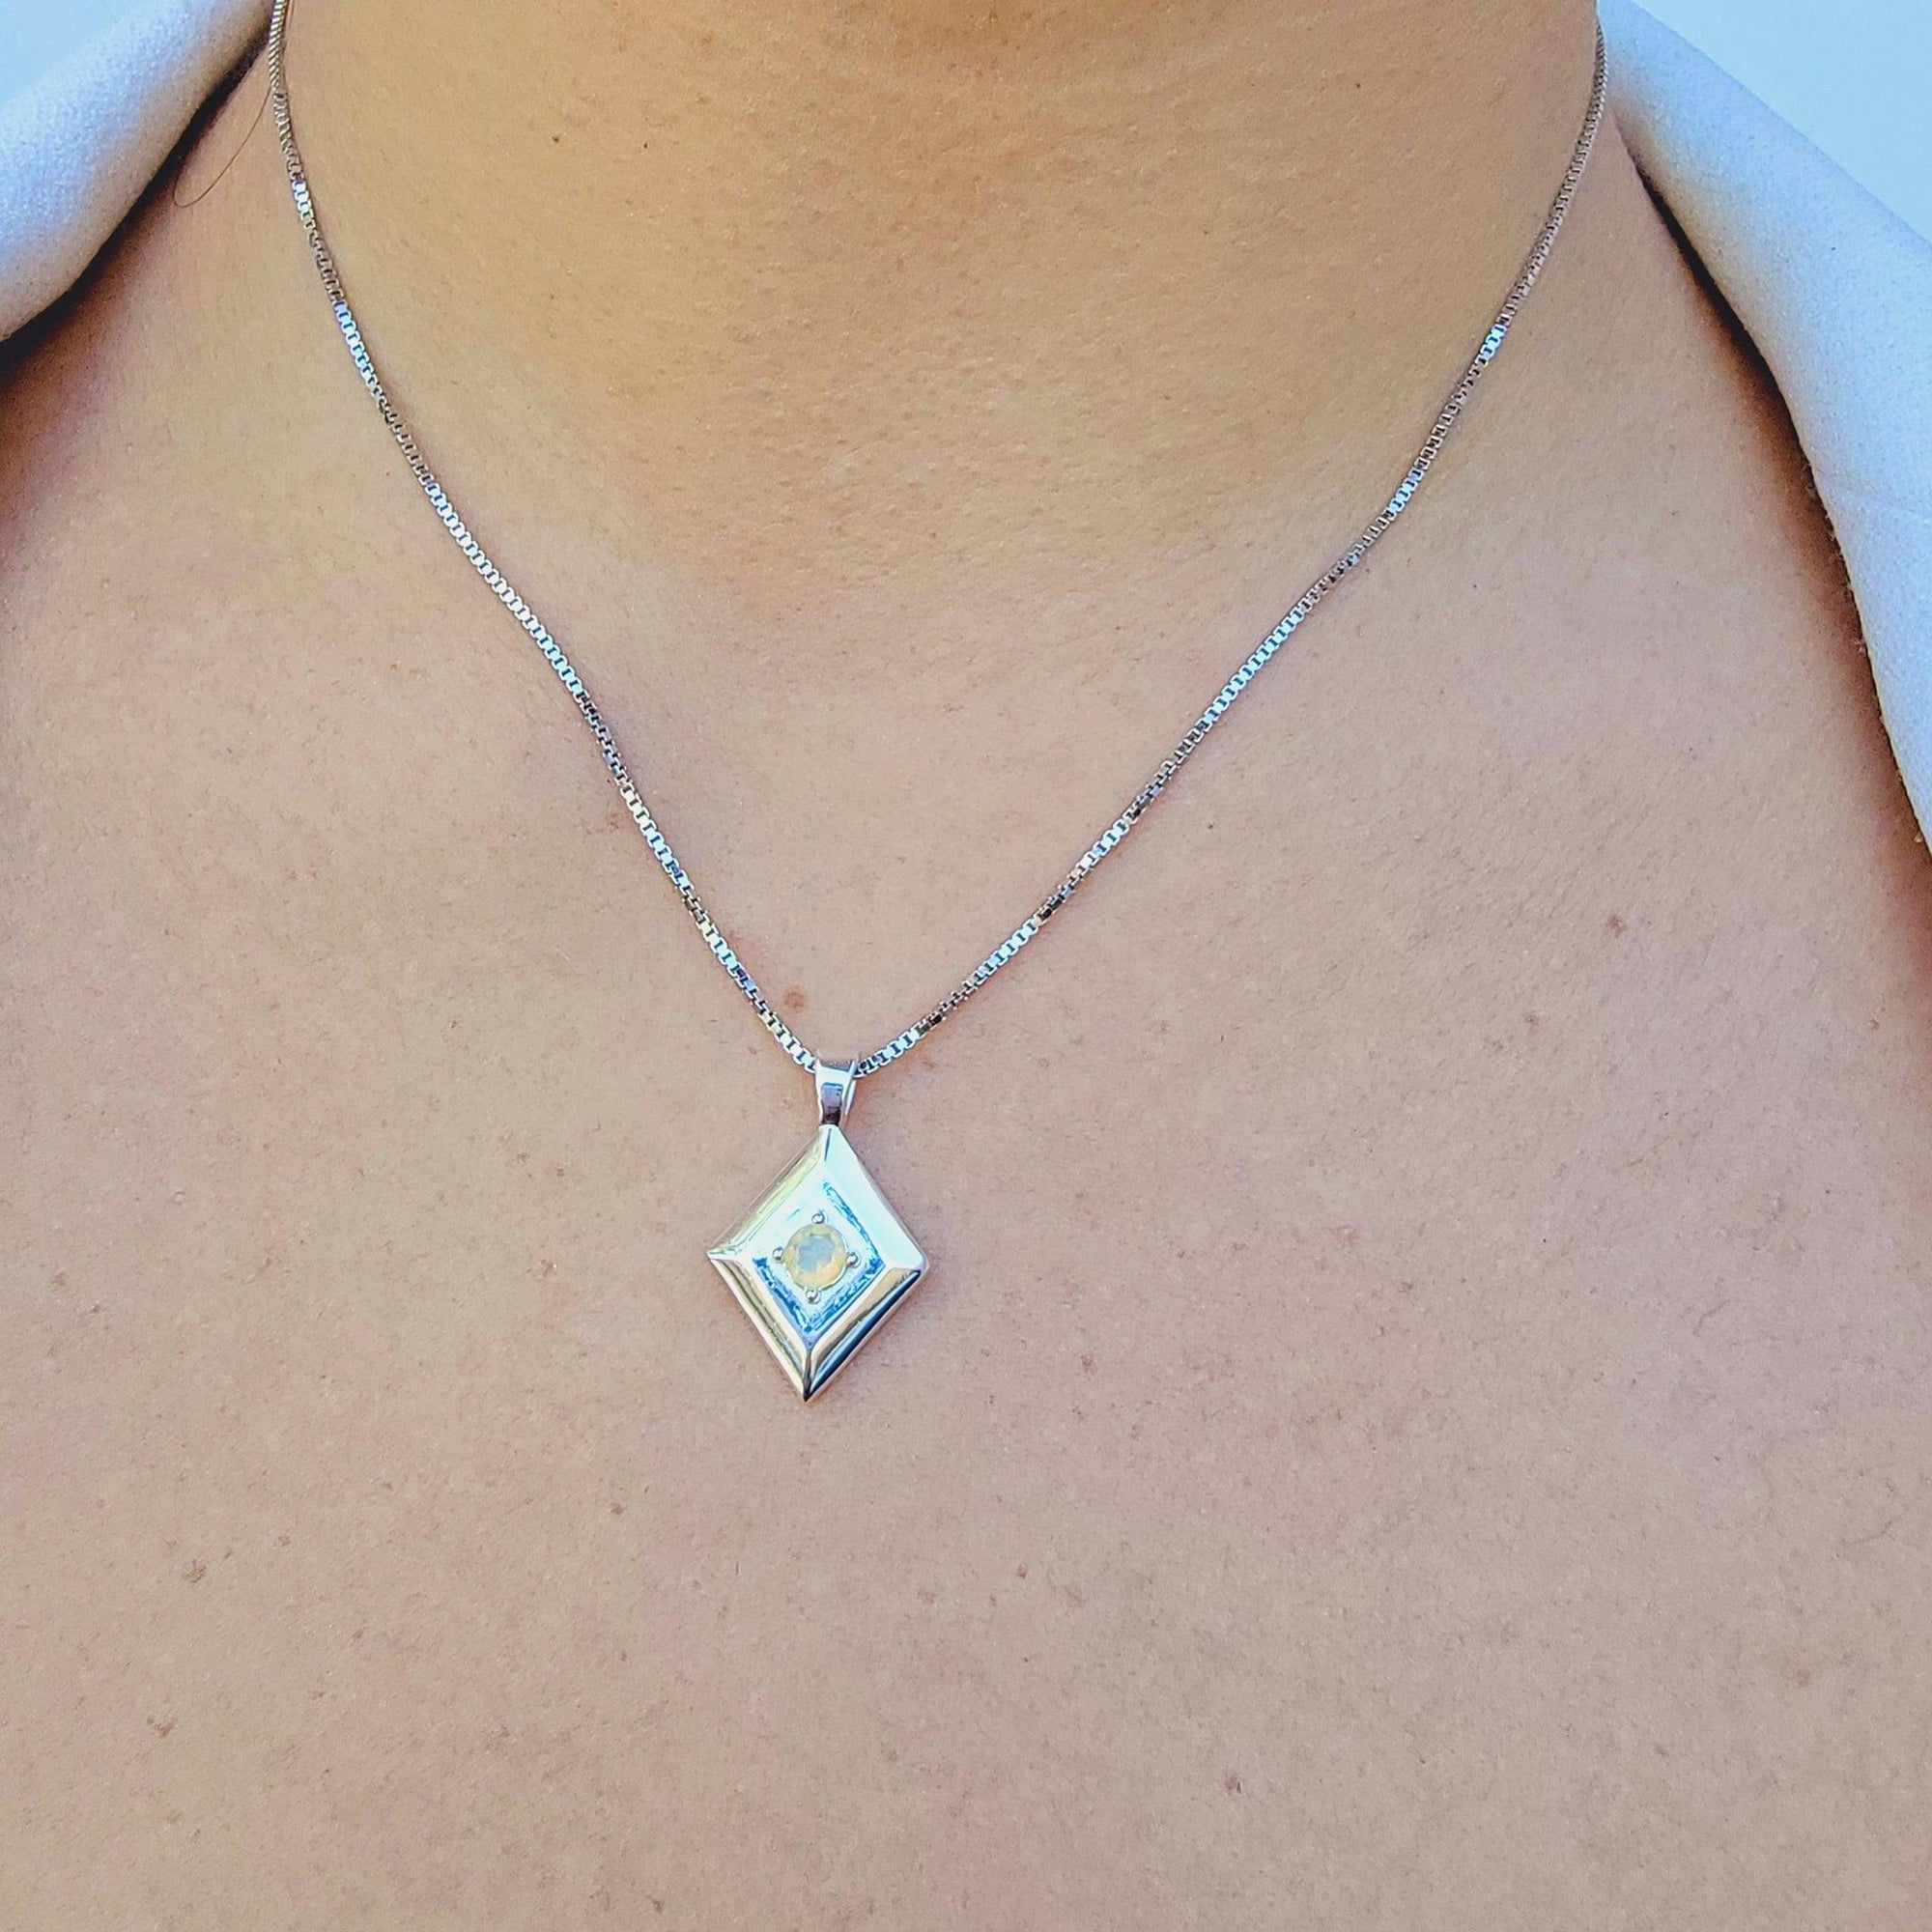 Natural Opal Pendant Necklace - Uniquelan Jewelry